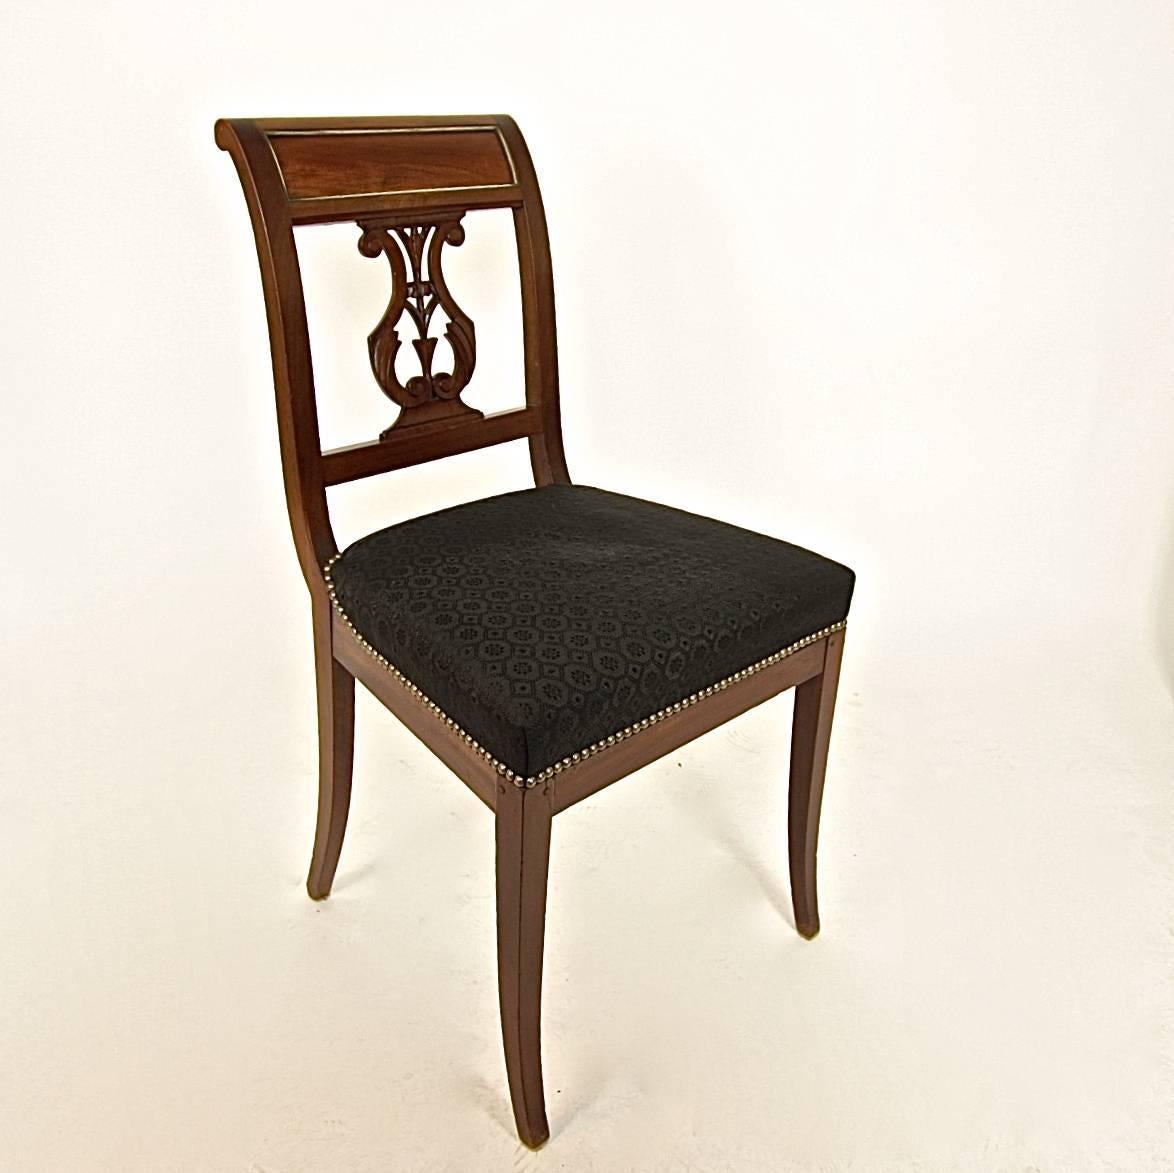 Satz von vier Directoire-Mahagoni-Beistellstühlen des späten 18. Jahrhunderts mit Messingbändern, mit rechteckigen Plattenrücken, geschwungen und durchbrochen mit einem Leier-Motiv aus Blattwerk und Involutionen, überragt von einem mit